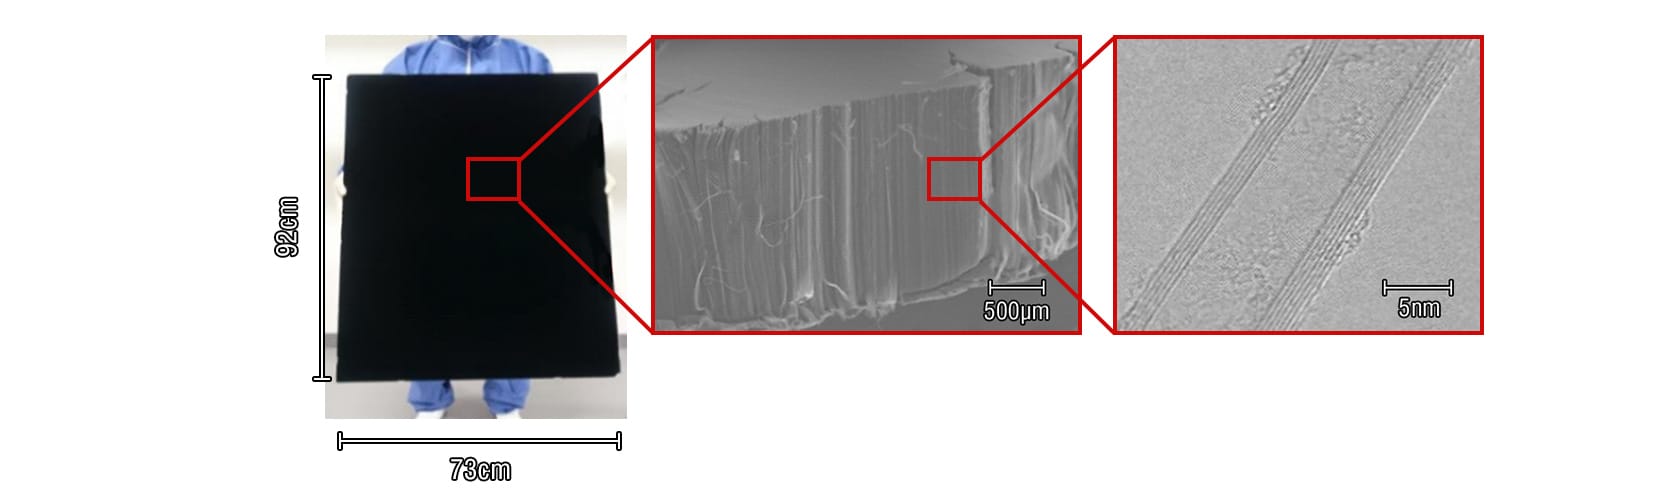 大面積基板とカーボンナノチューブ顕微鏡写真